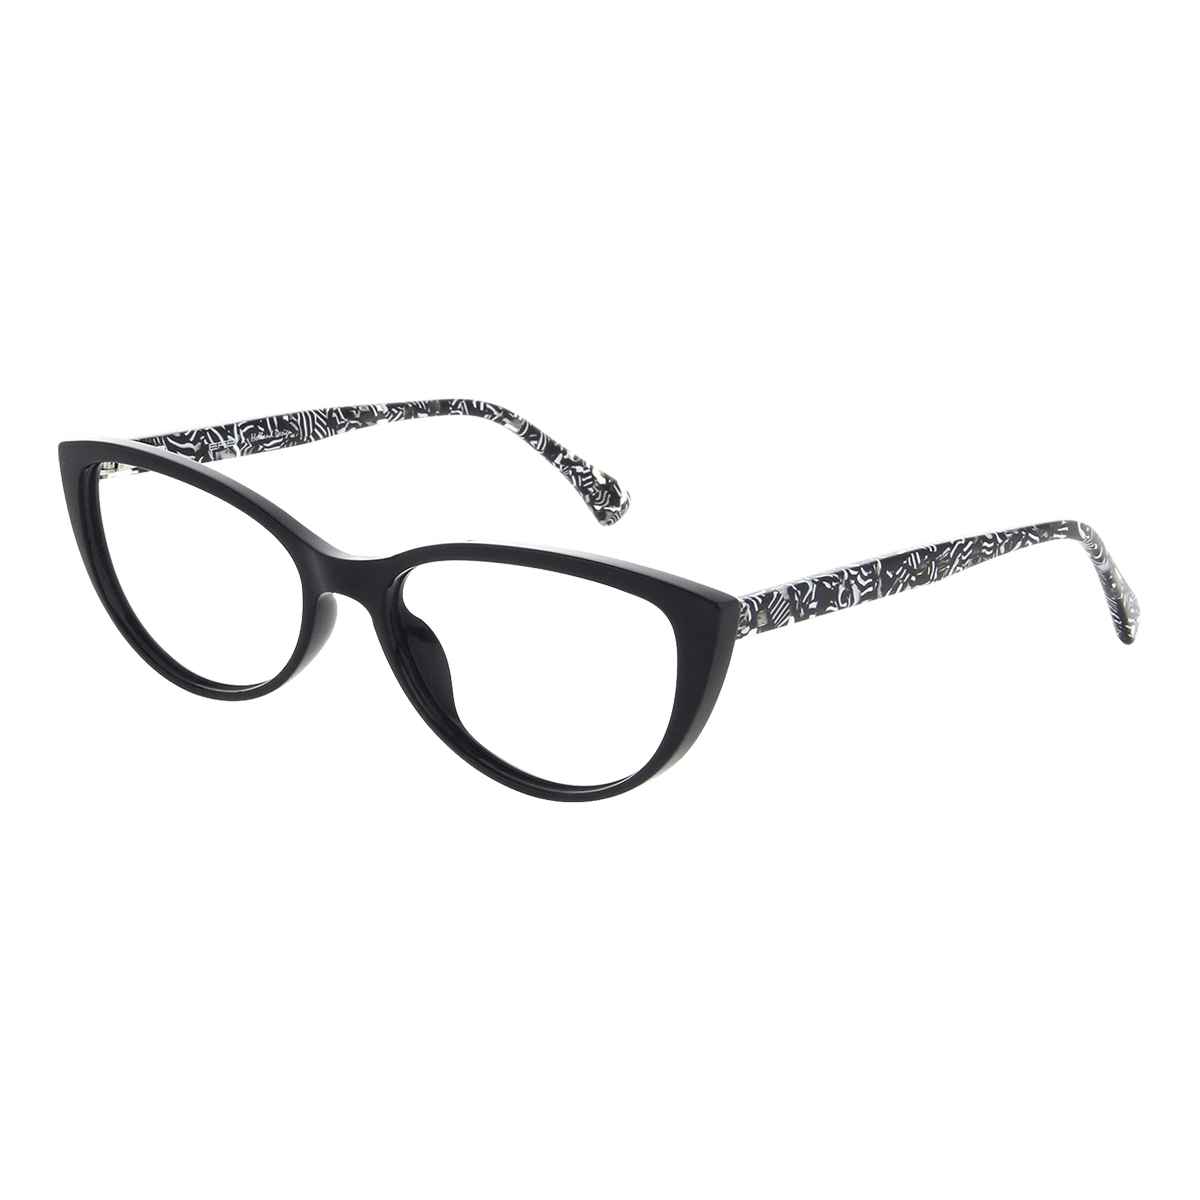 Eva - Cat-eye Black Reading Glasses for Women